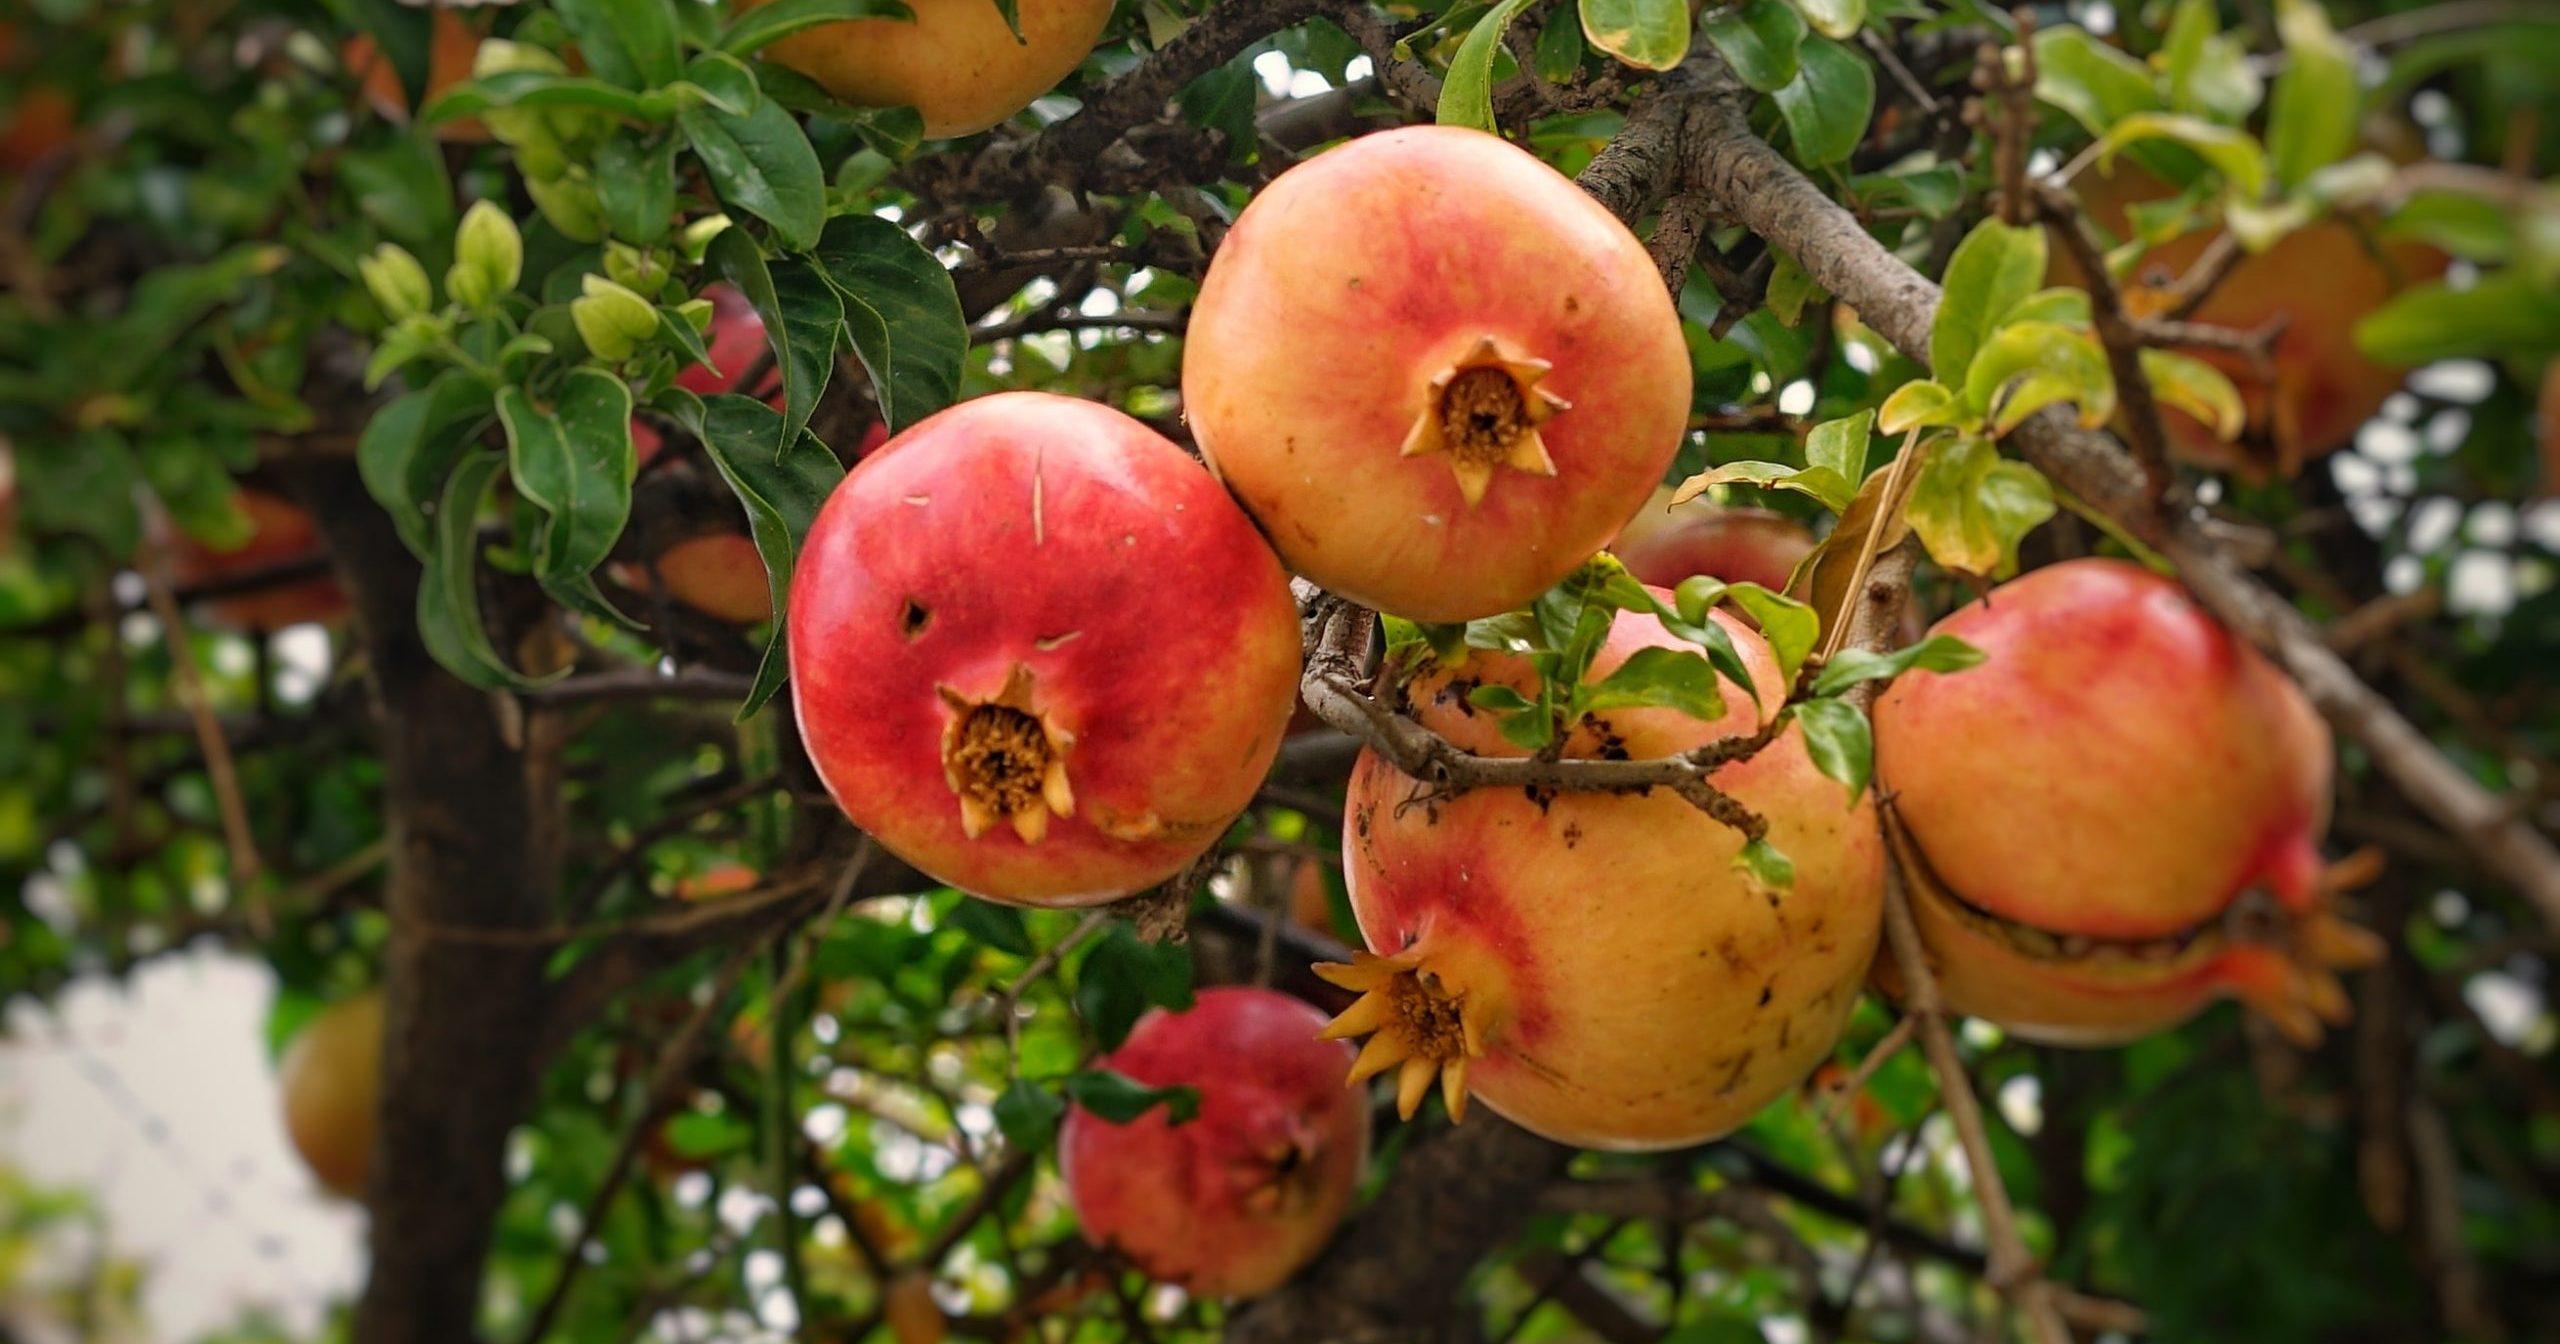 Why Do We Eat Pomegranates on Rosh Hashanah?